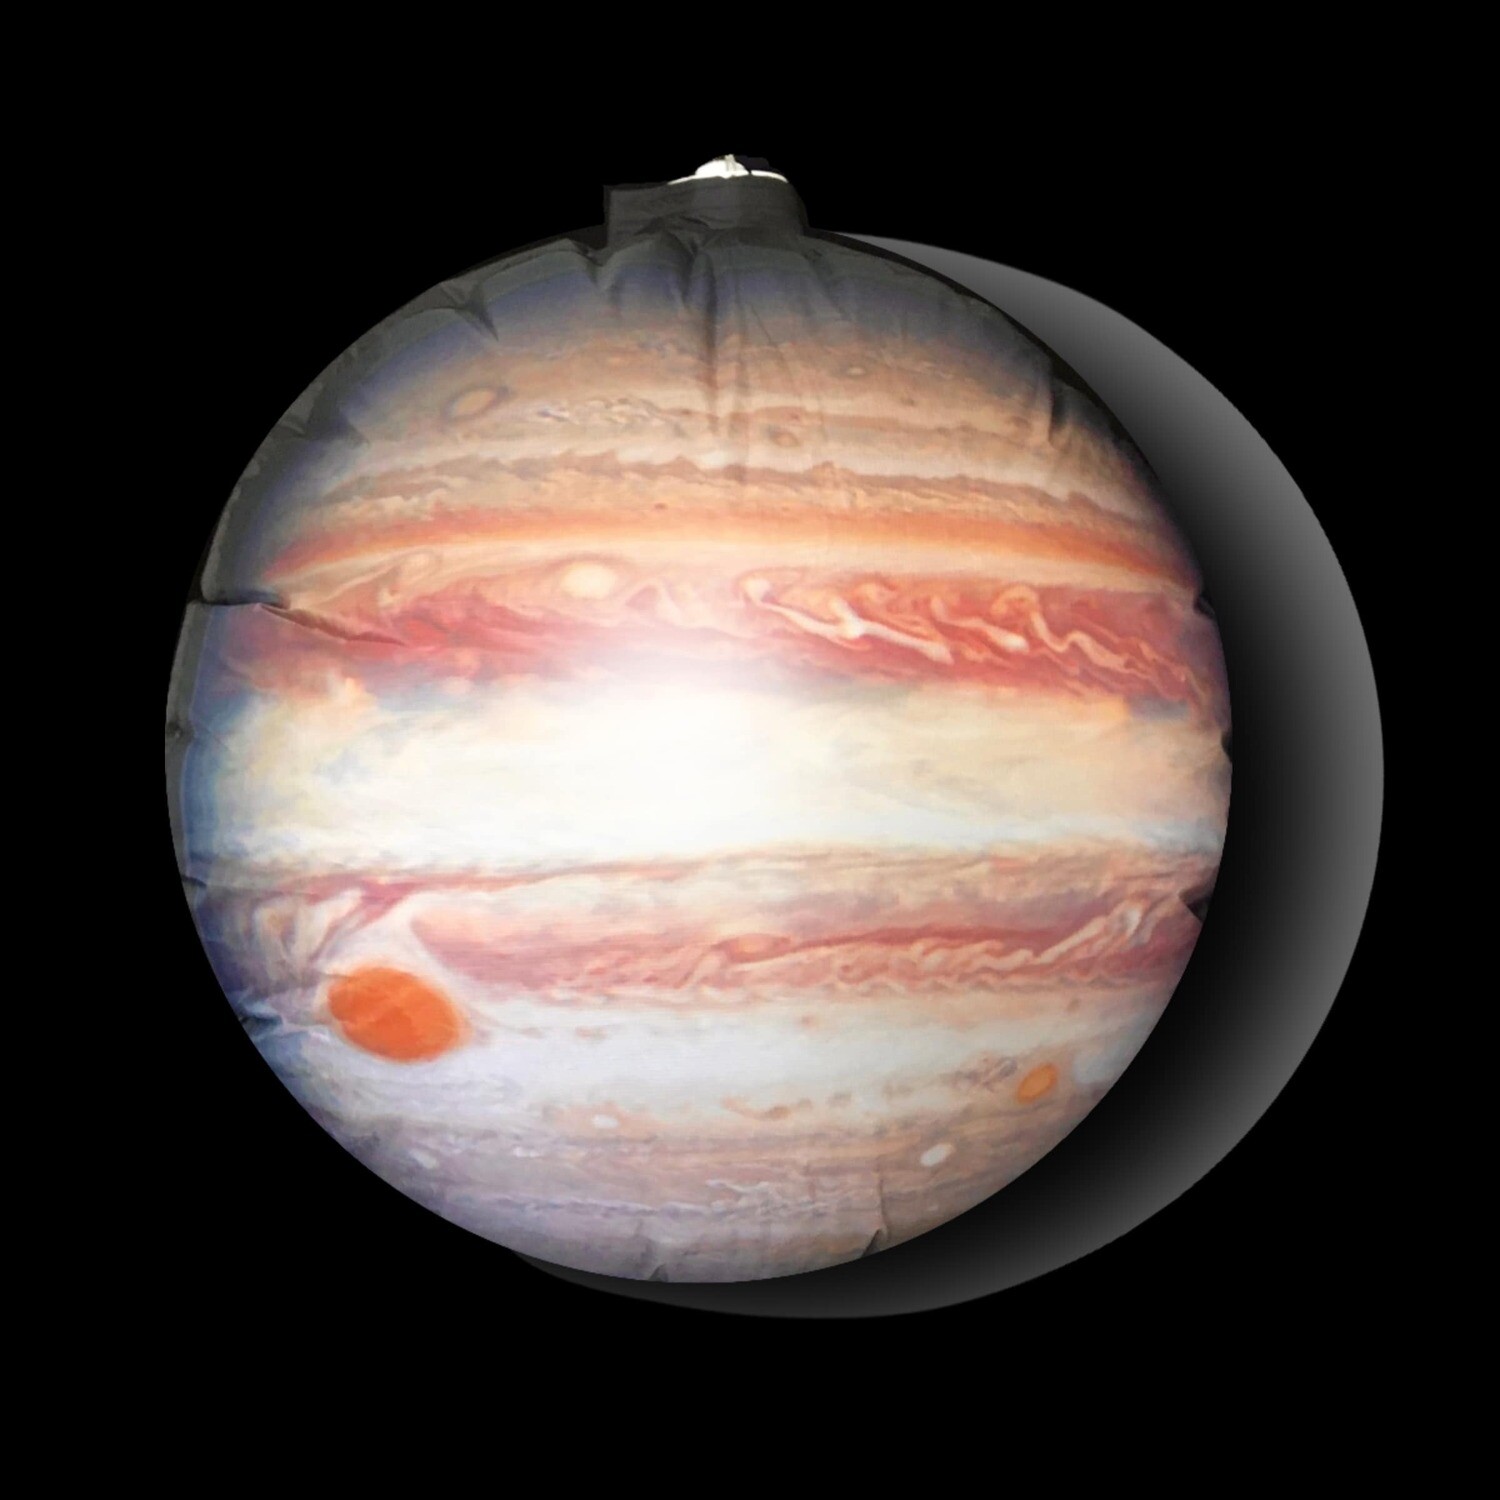 Hanging Inflatable Planet Jupiter 5ft/150cm x 5ft/150cm high